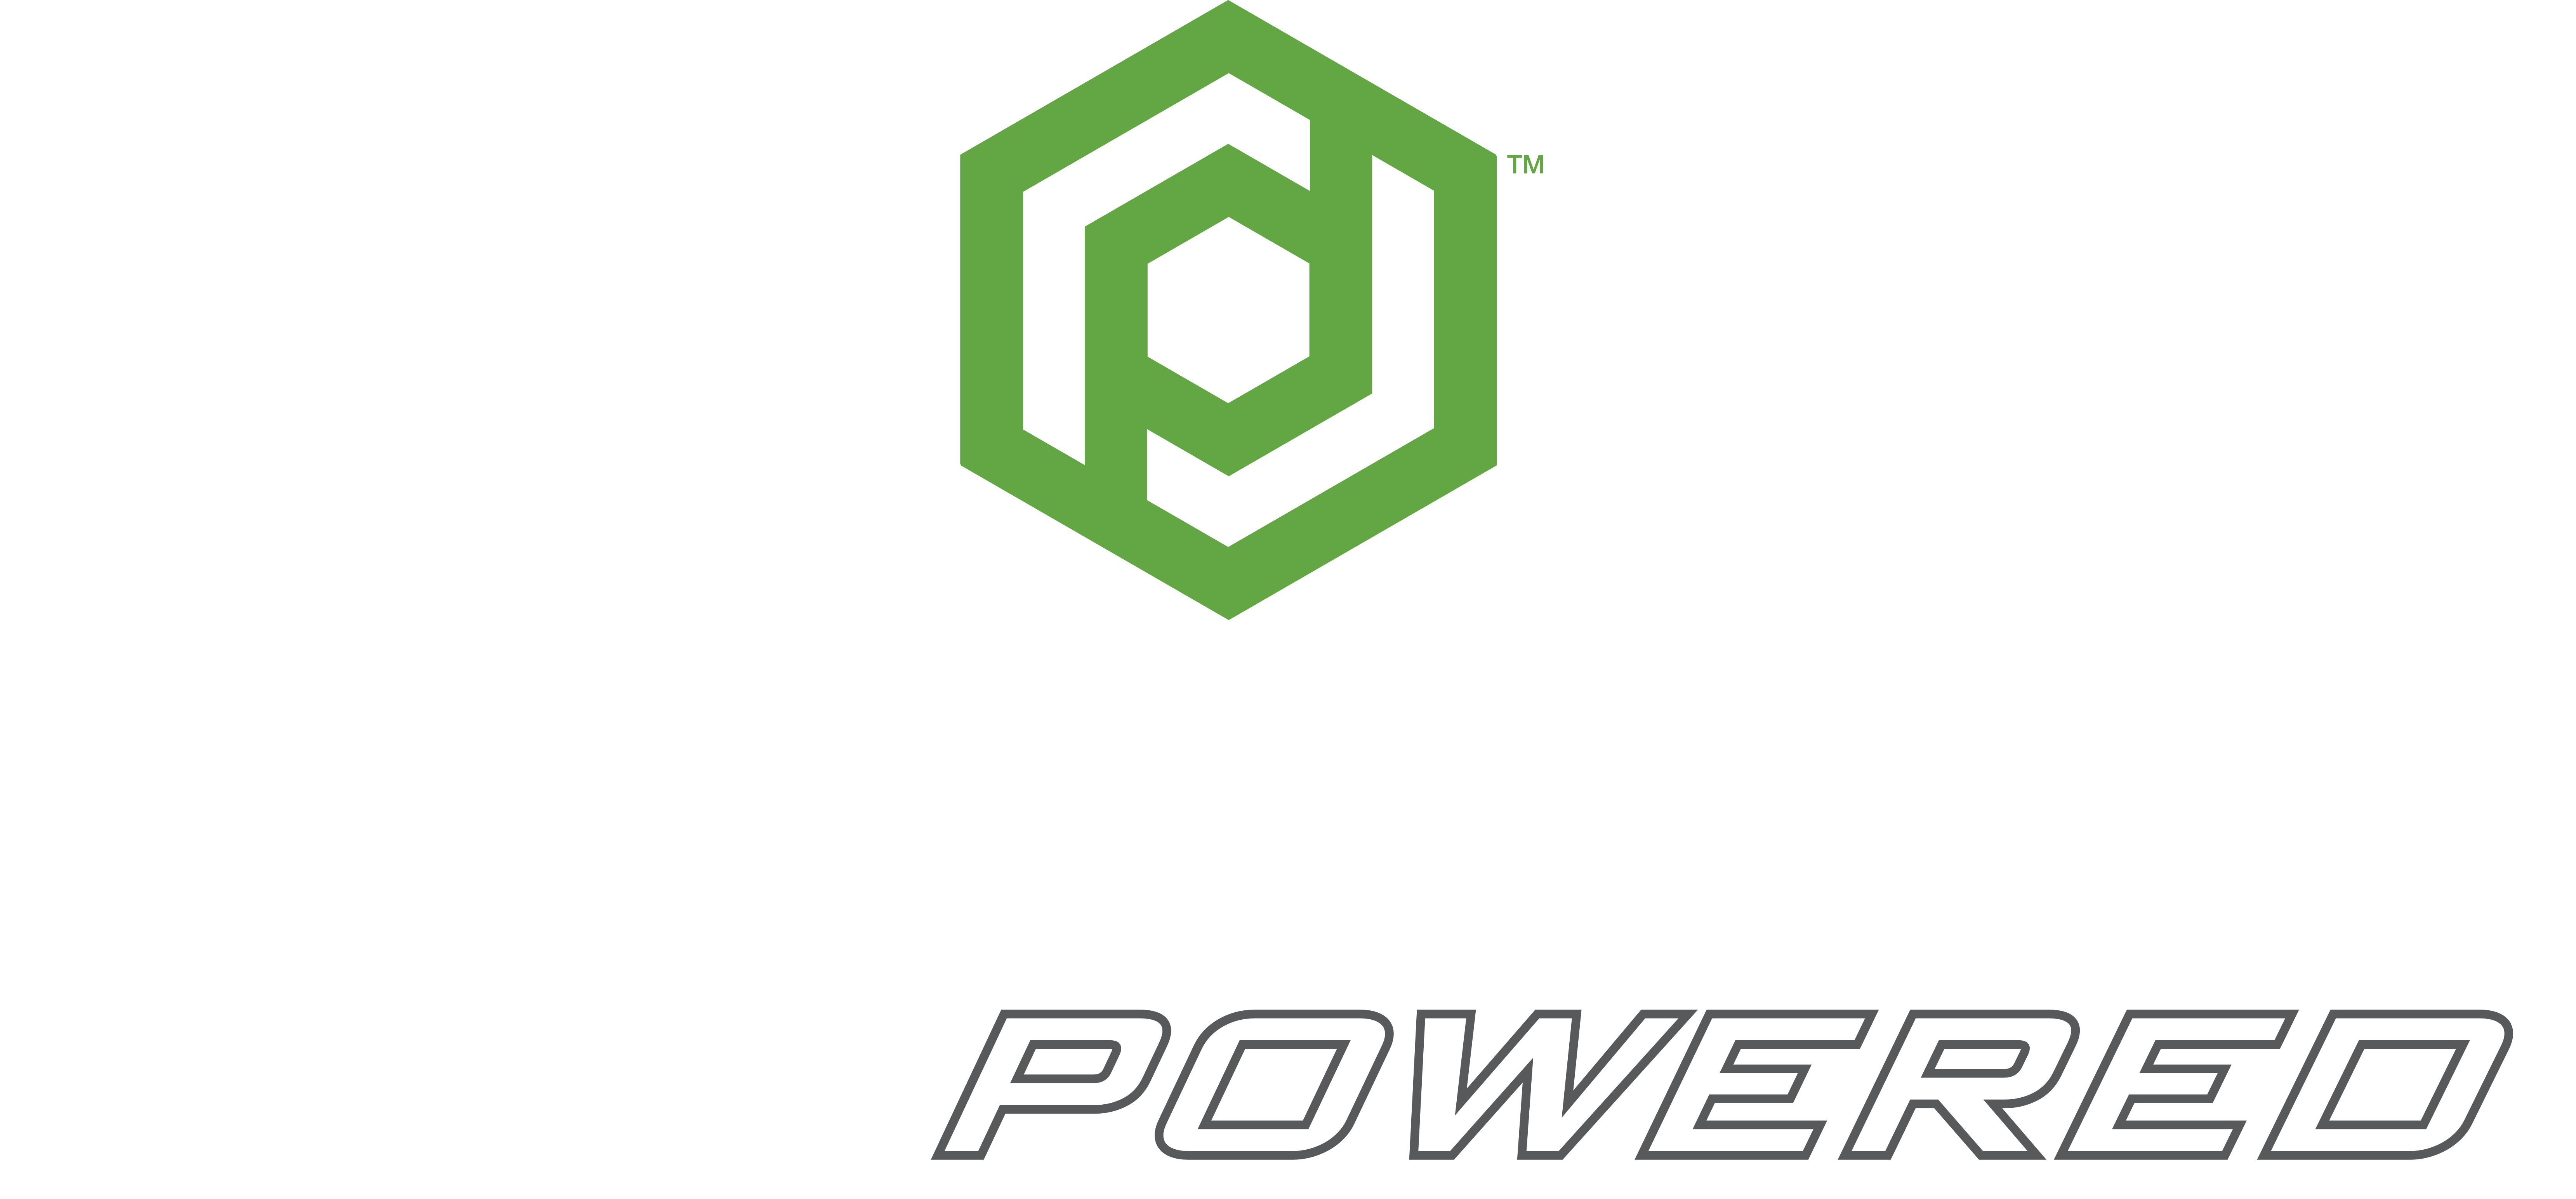 Logo Proterra